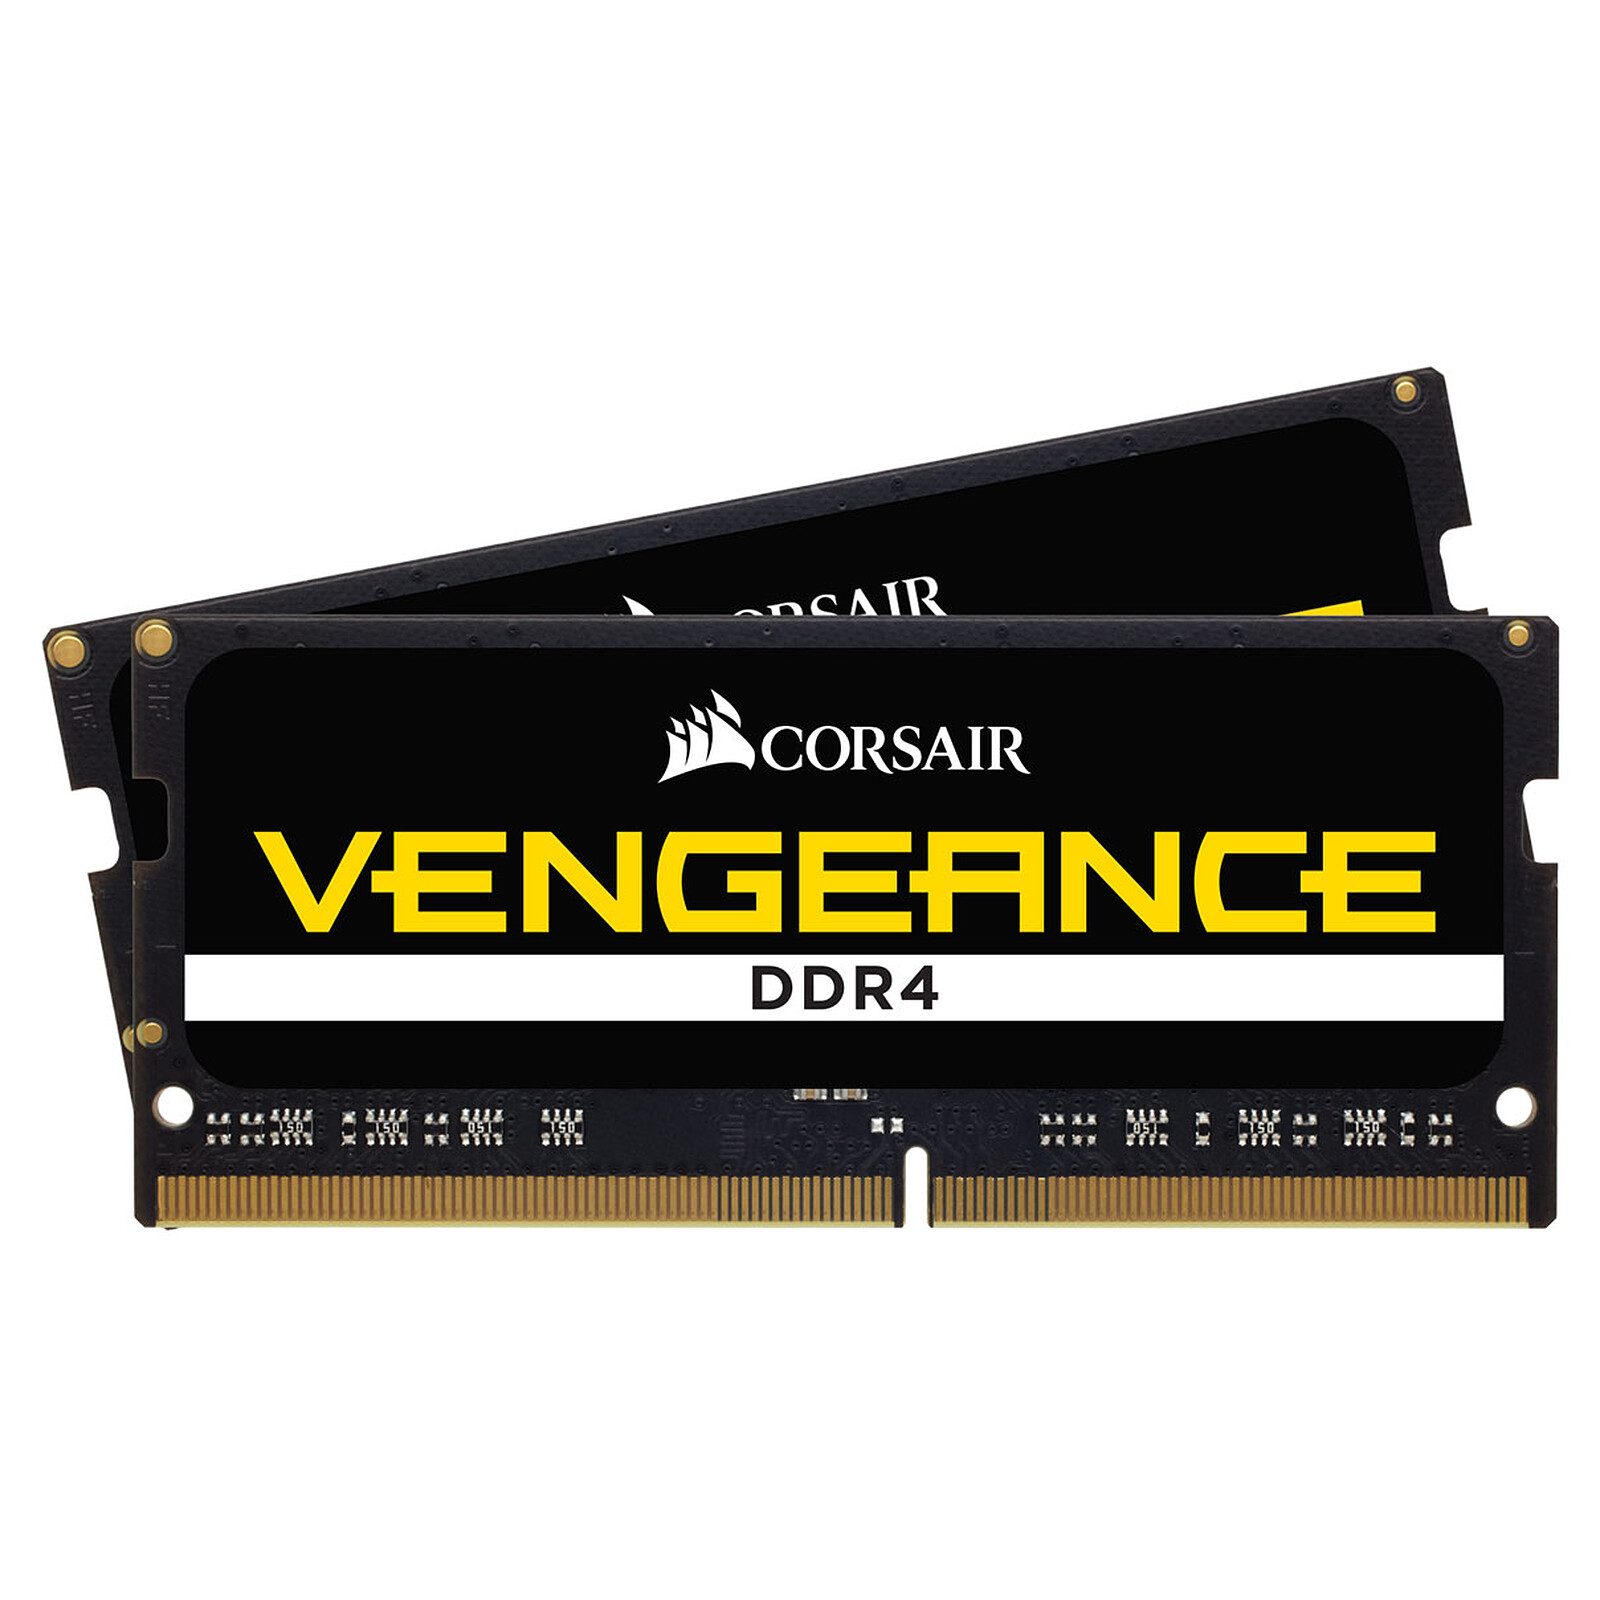 Mémoire RAM Corsair Vengeance Pro Series - DDR3 - kit - 16 Go: 2 x